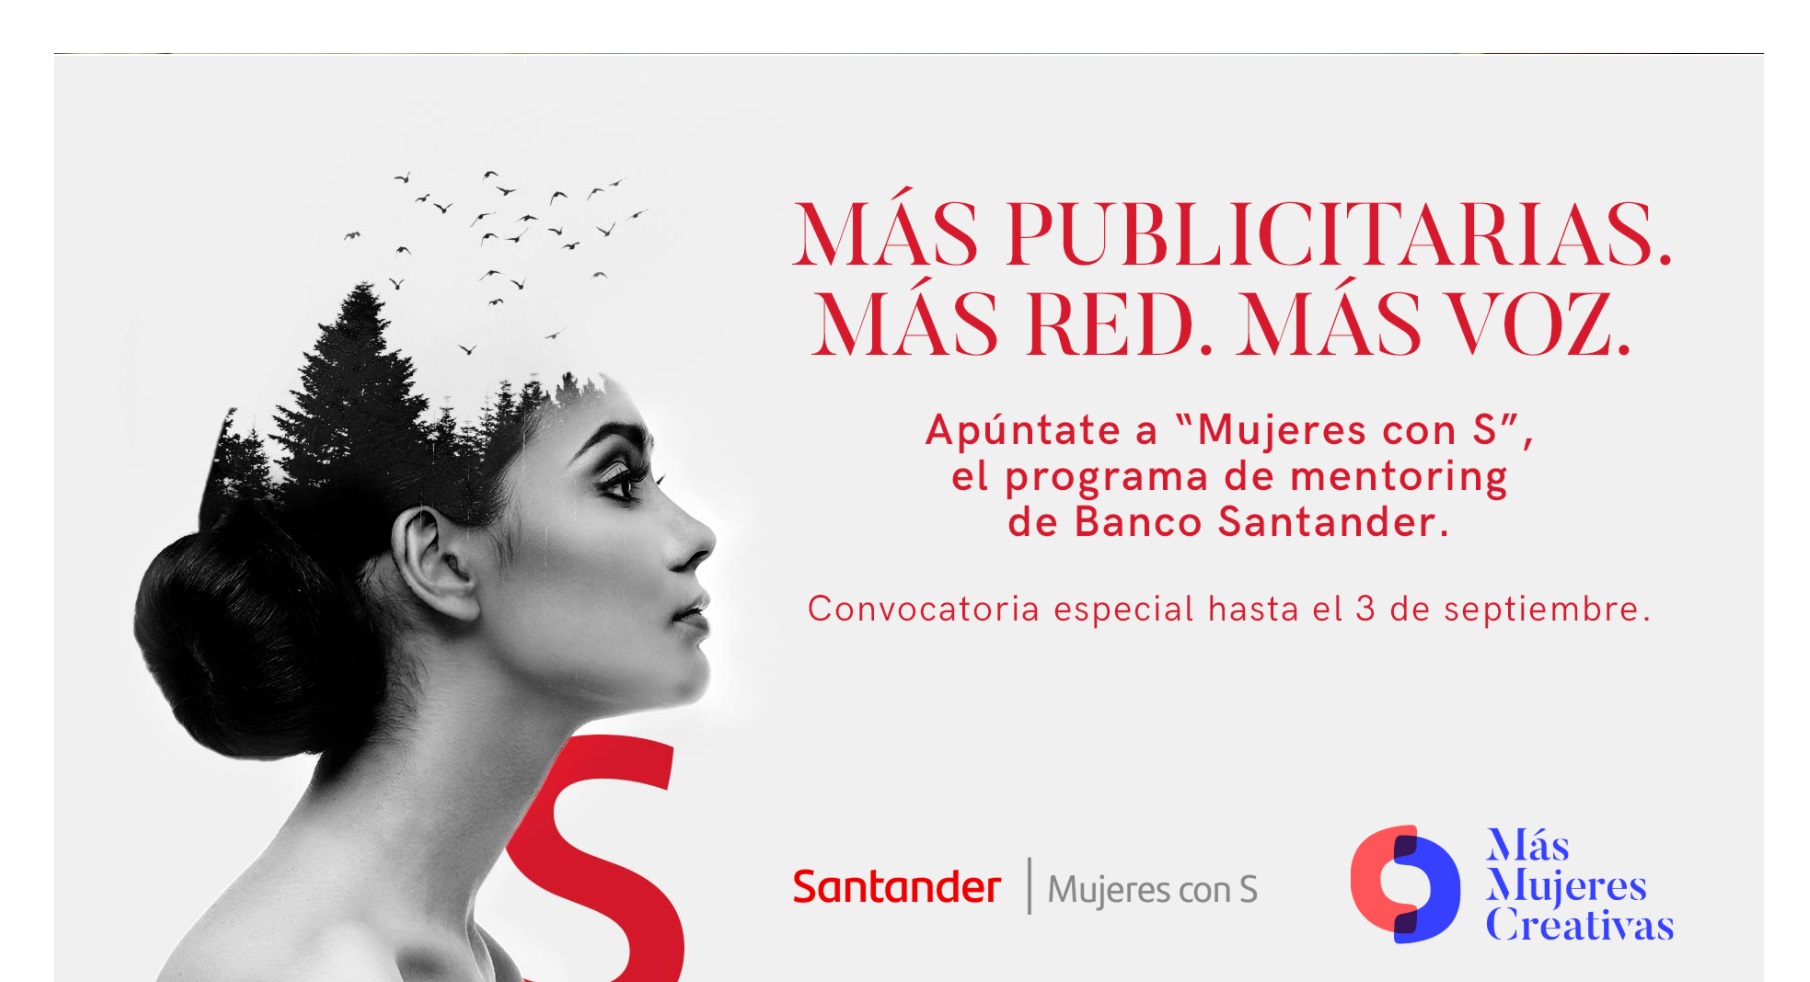 Más Mujeres Creativas , Banco Santander, colaboran ,Mujeres con S, programapublicidad